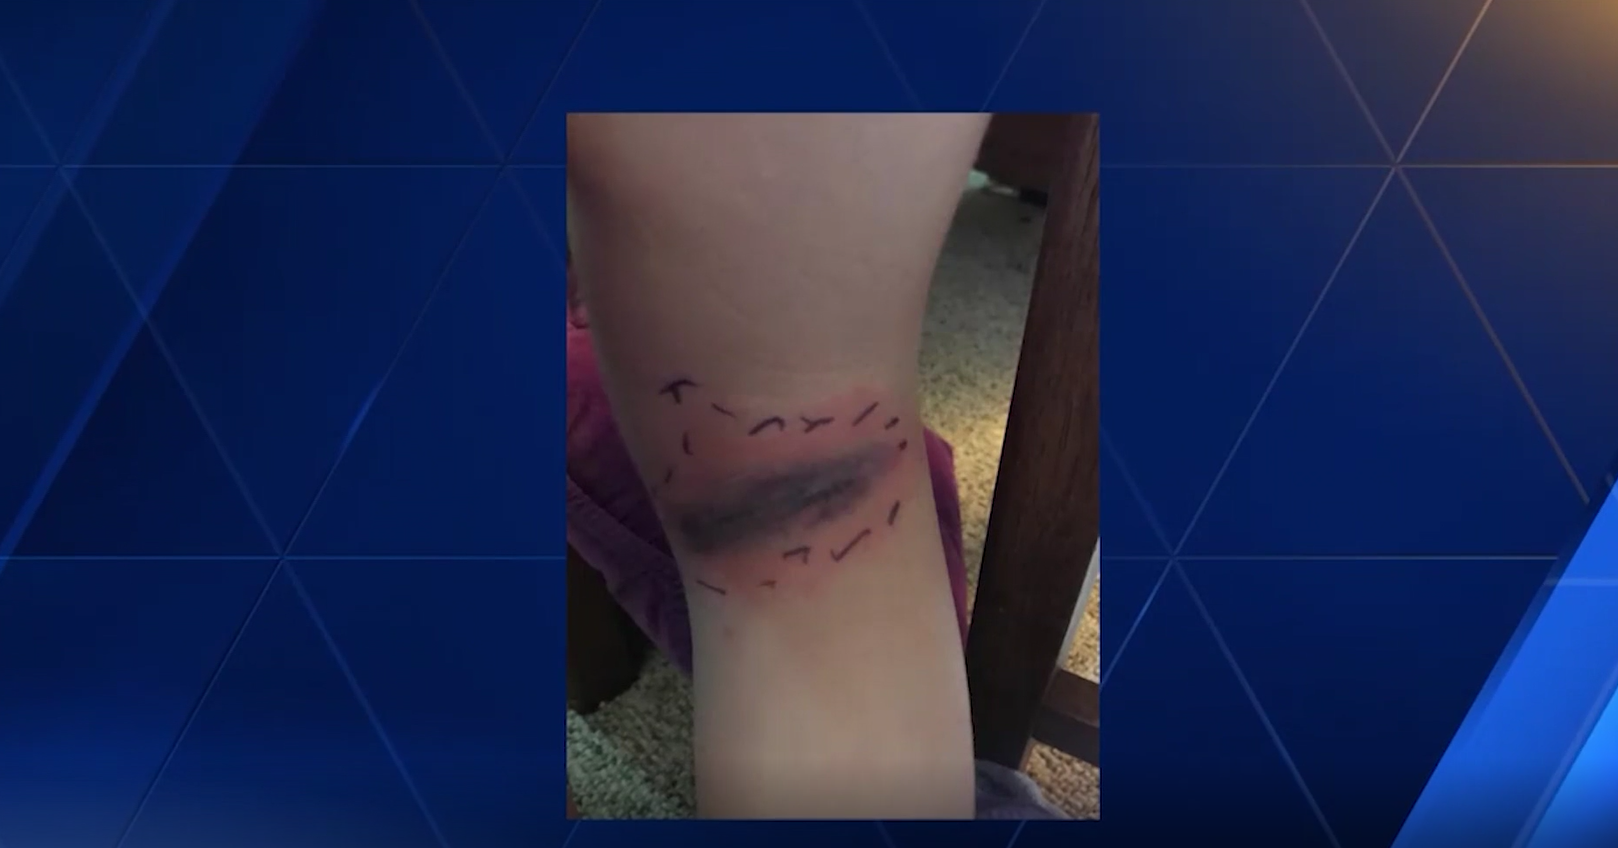 Black widow spider bite sends girl to hospital - Kansas news - NewsLocker